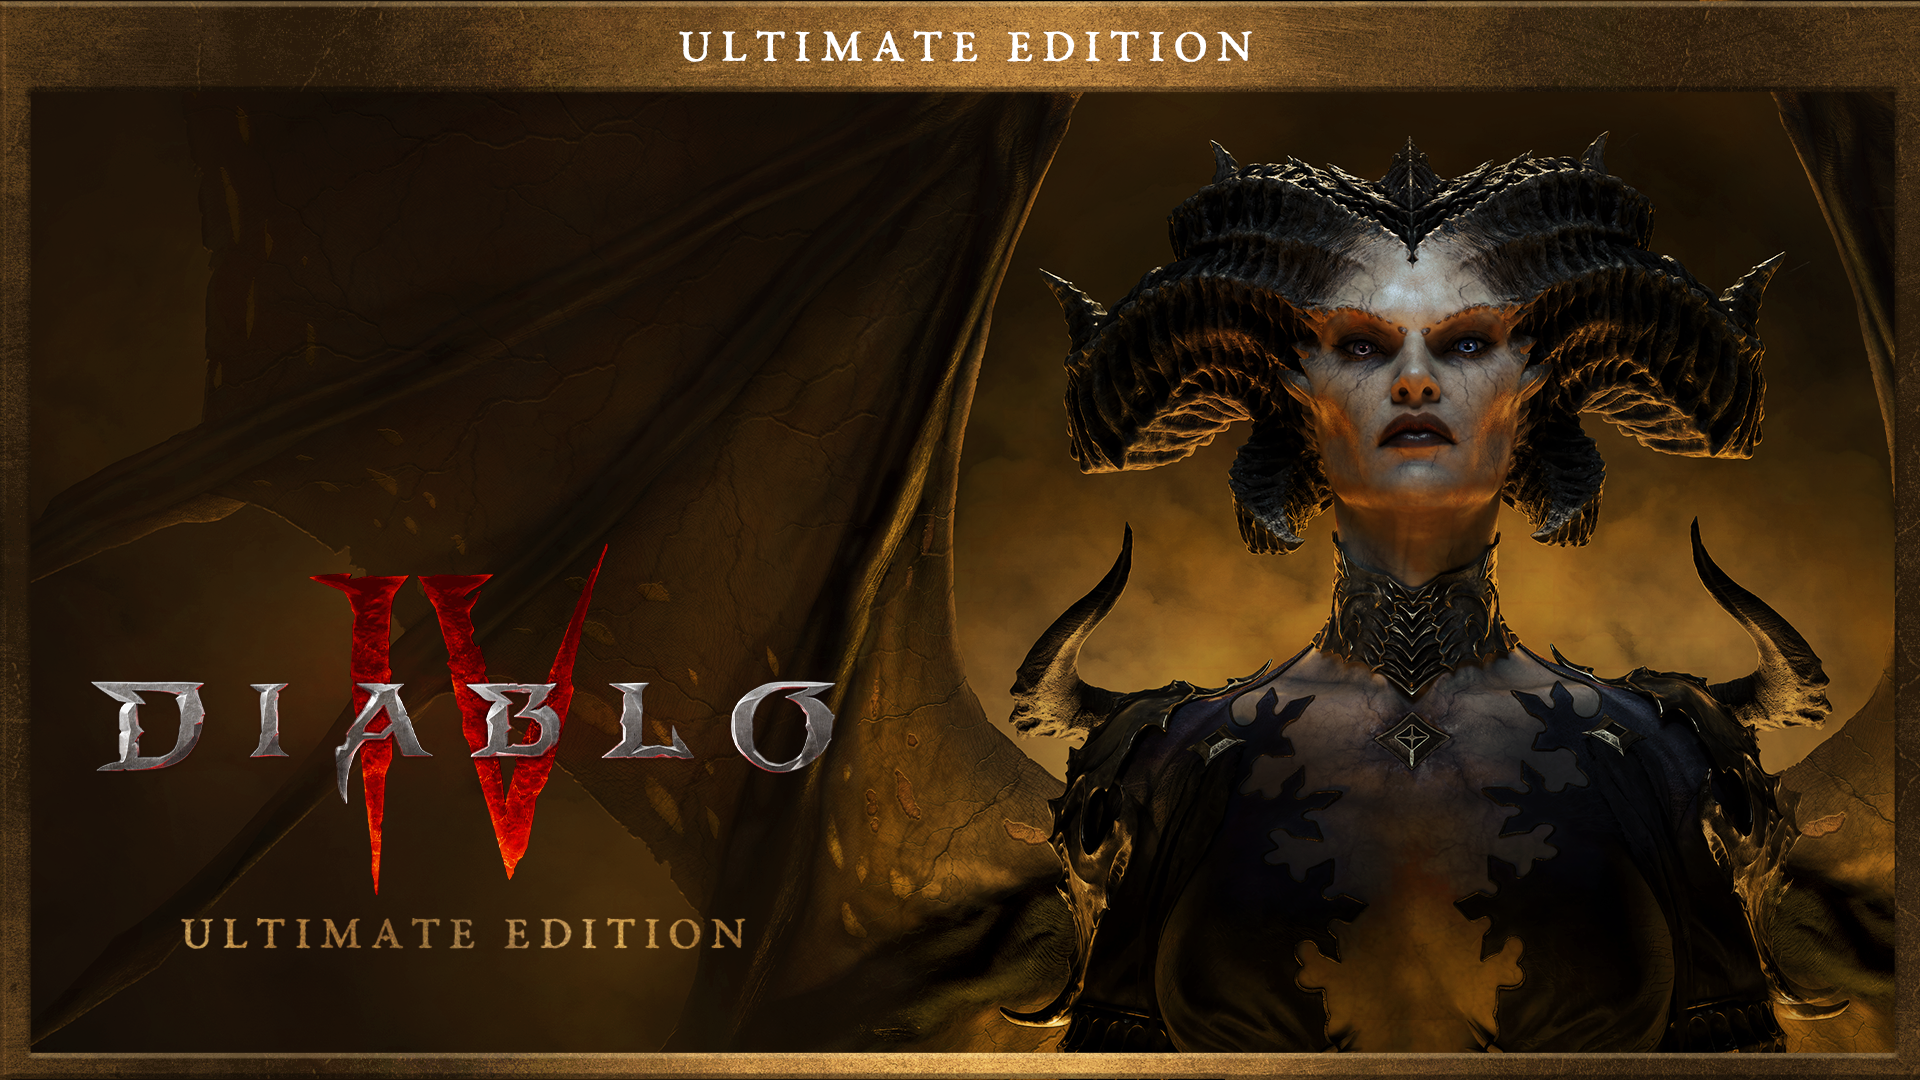 Immagine pubblicata in relazione al seguente contenuto: Blizzard pubblica un trailer di Diablo IV e ne ufficializza la data di lancio | Nome immagine: news33956_Diablo-IV_Marketing_Asset_2.png